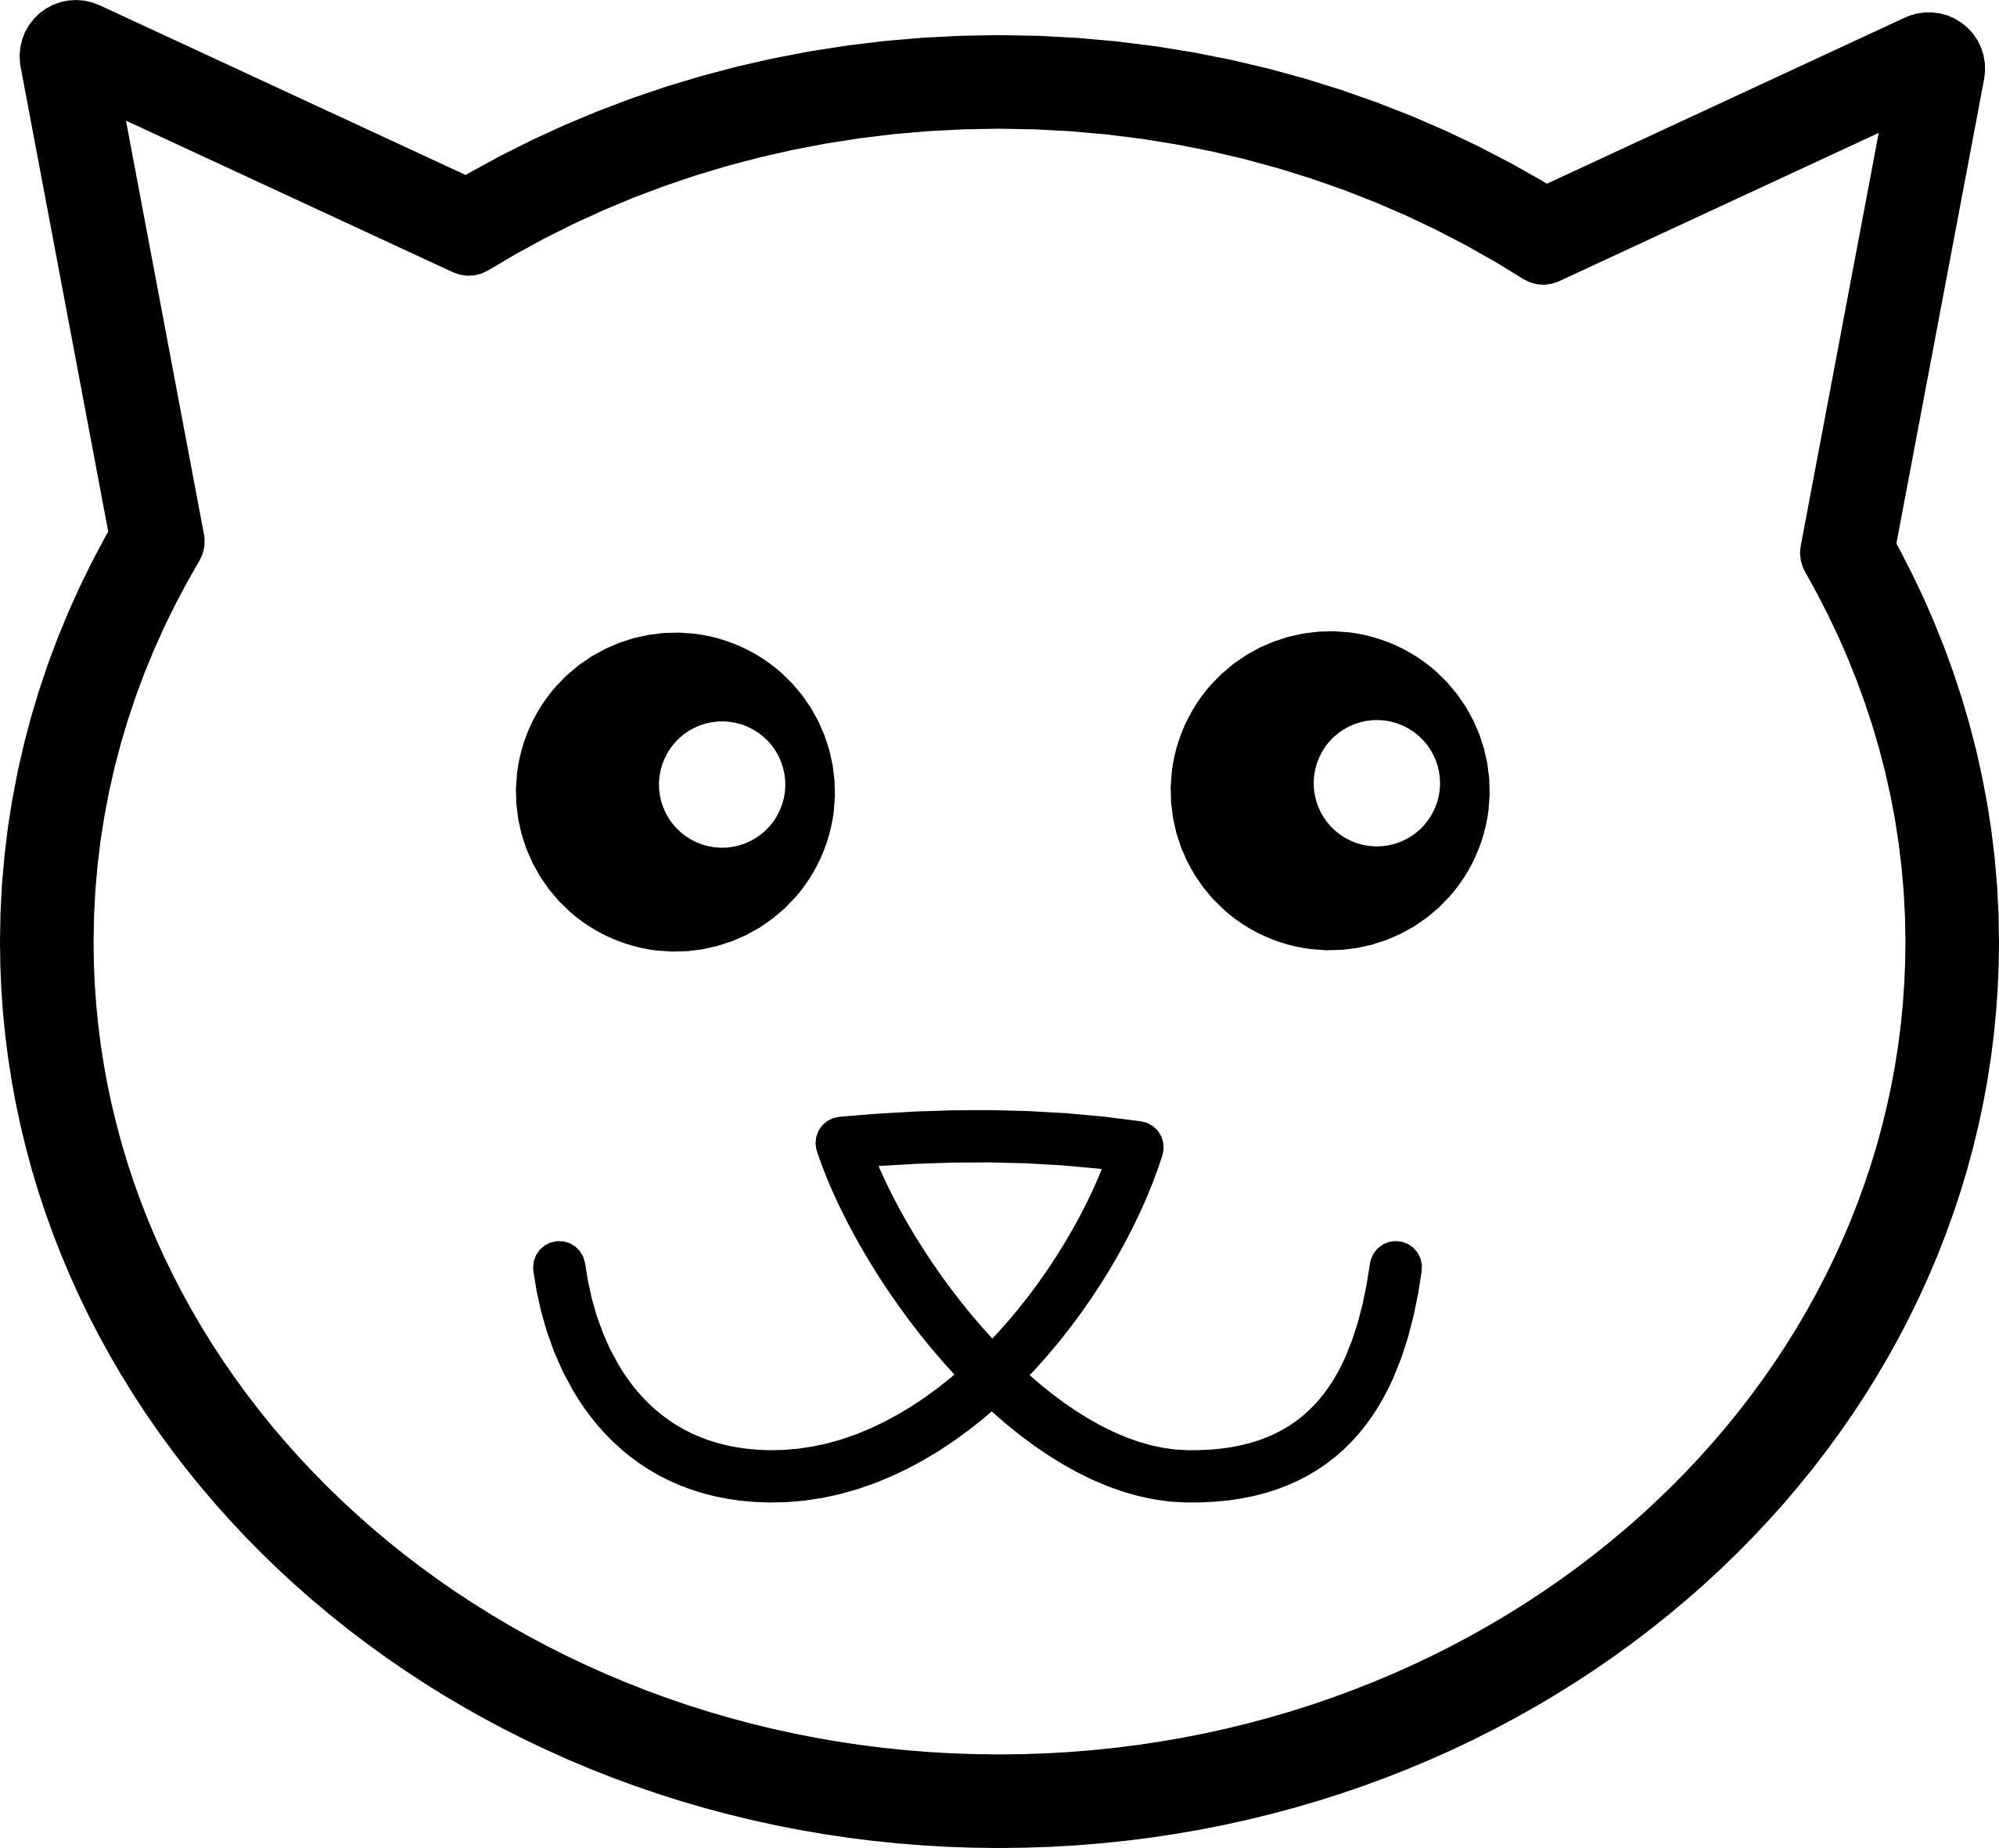 Cat face clip art - ClipartFox